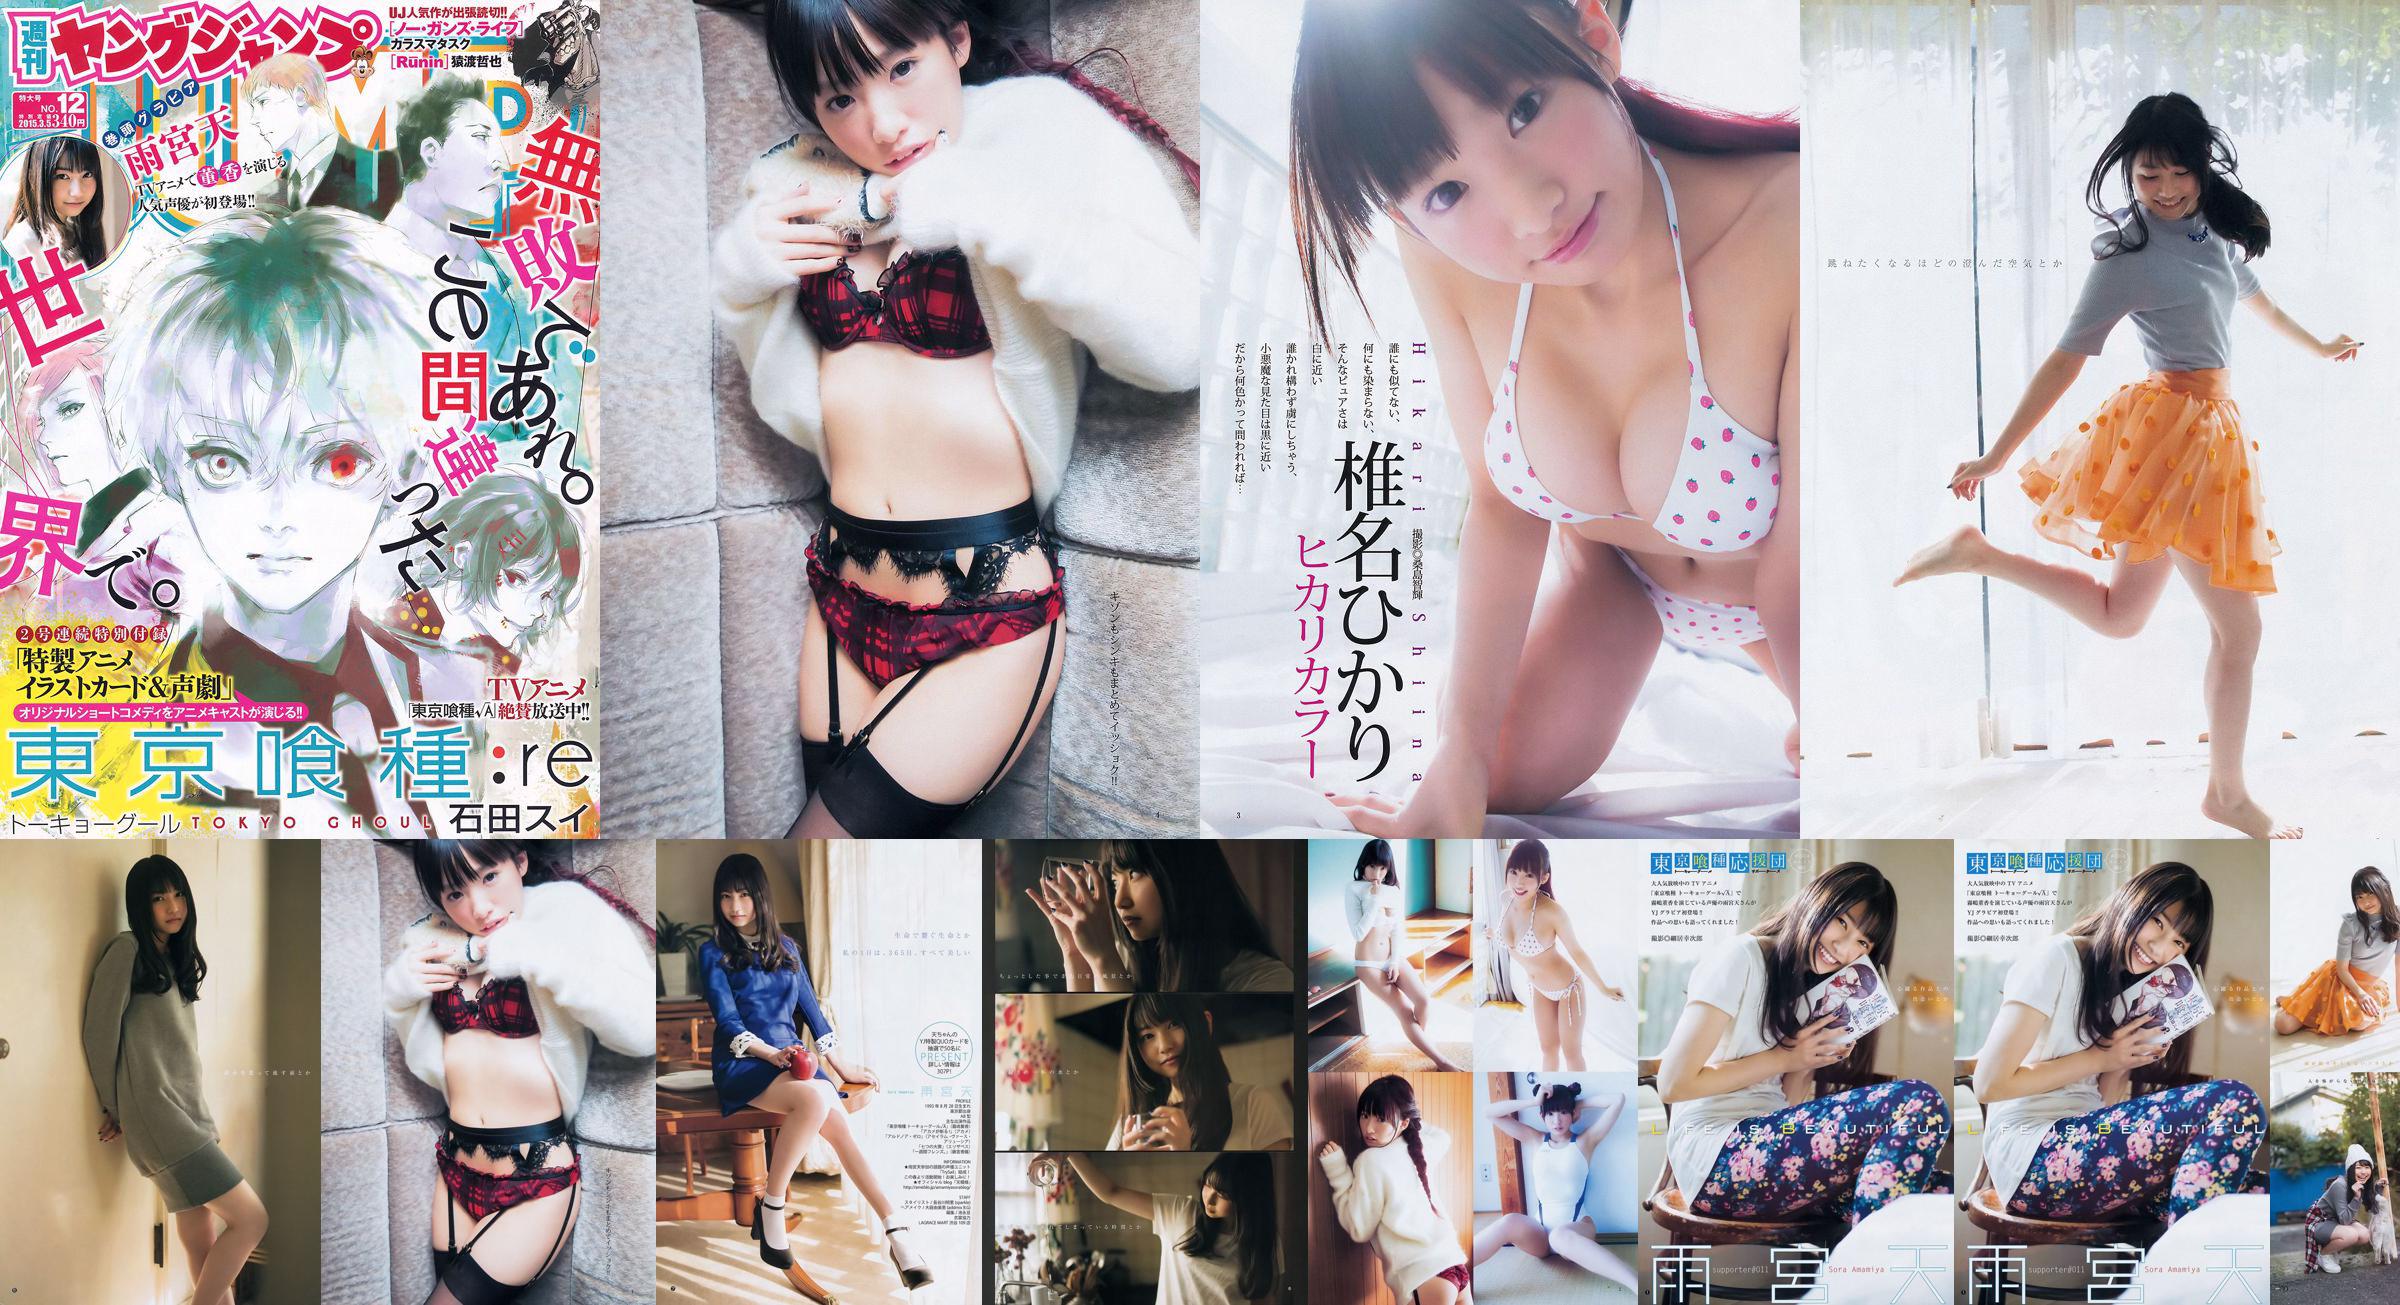 雨宮天 椎名ひかり [Weekly Young Jump] 2015年No.12 写真杂志 No.144797 第1頁